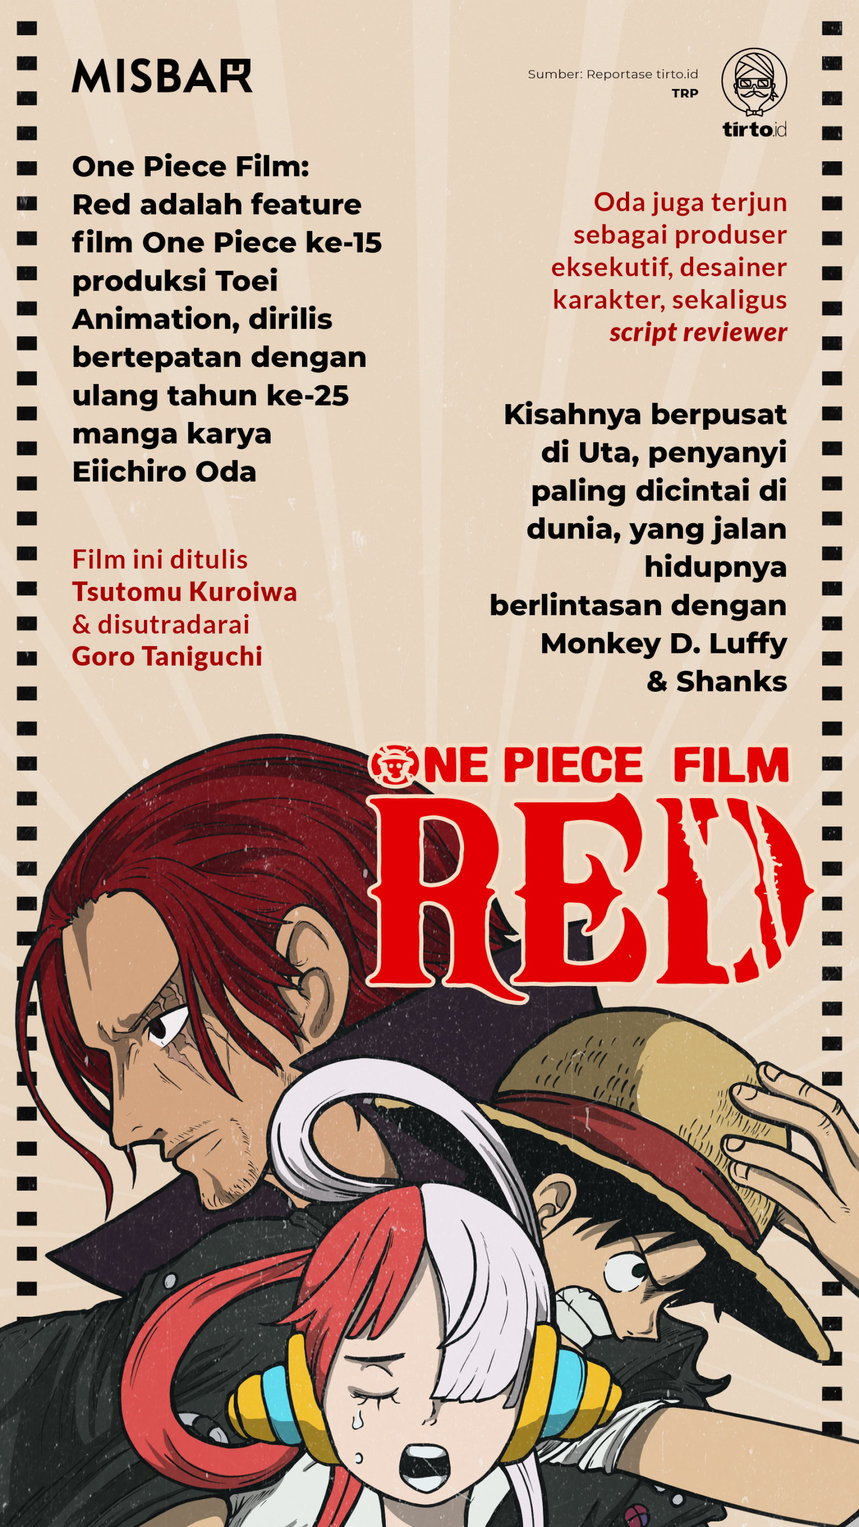 Infografik Misbar One Piece Film Red